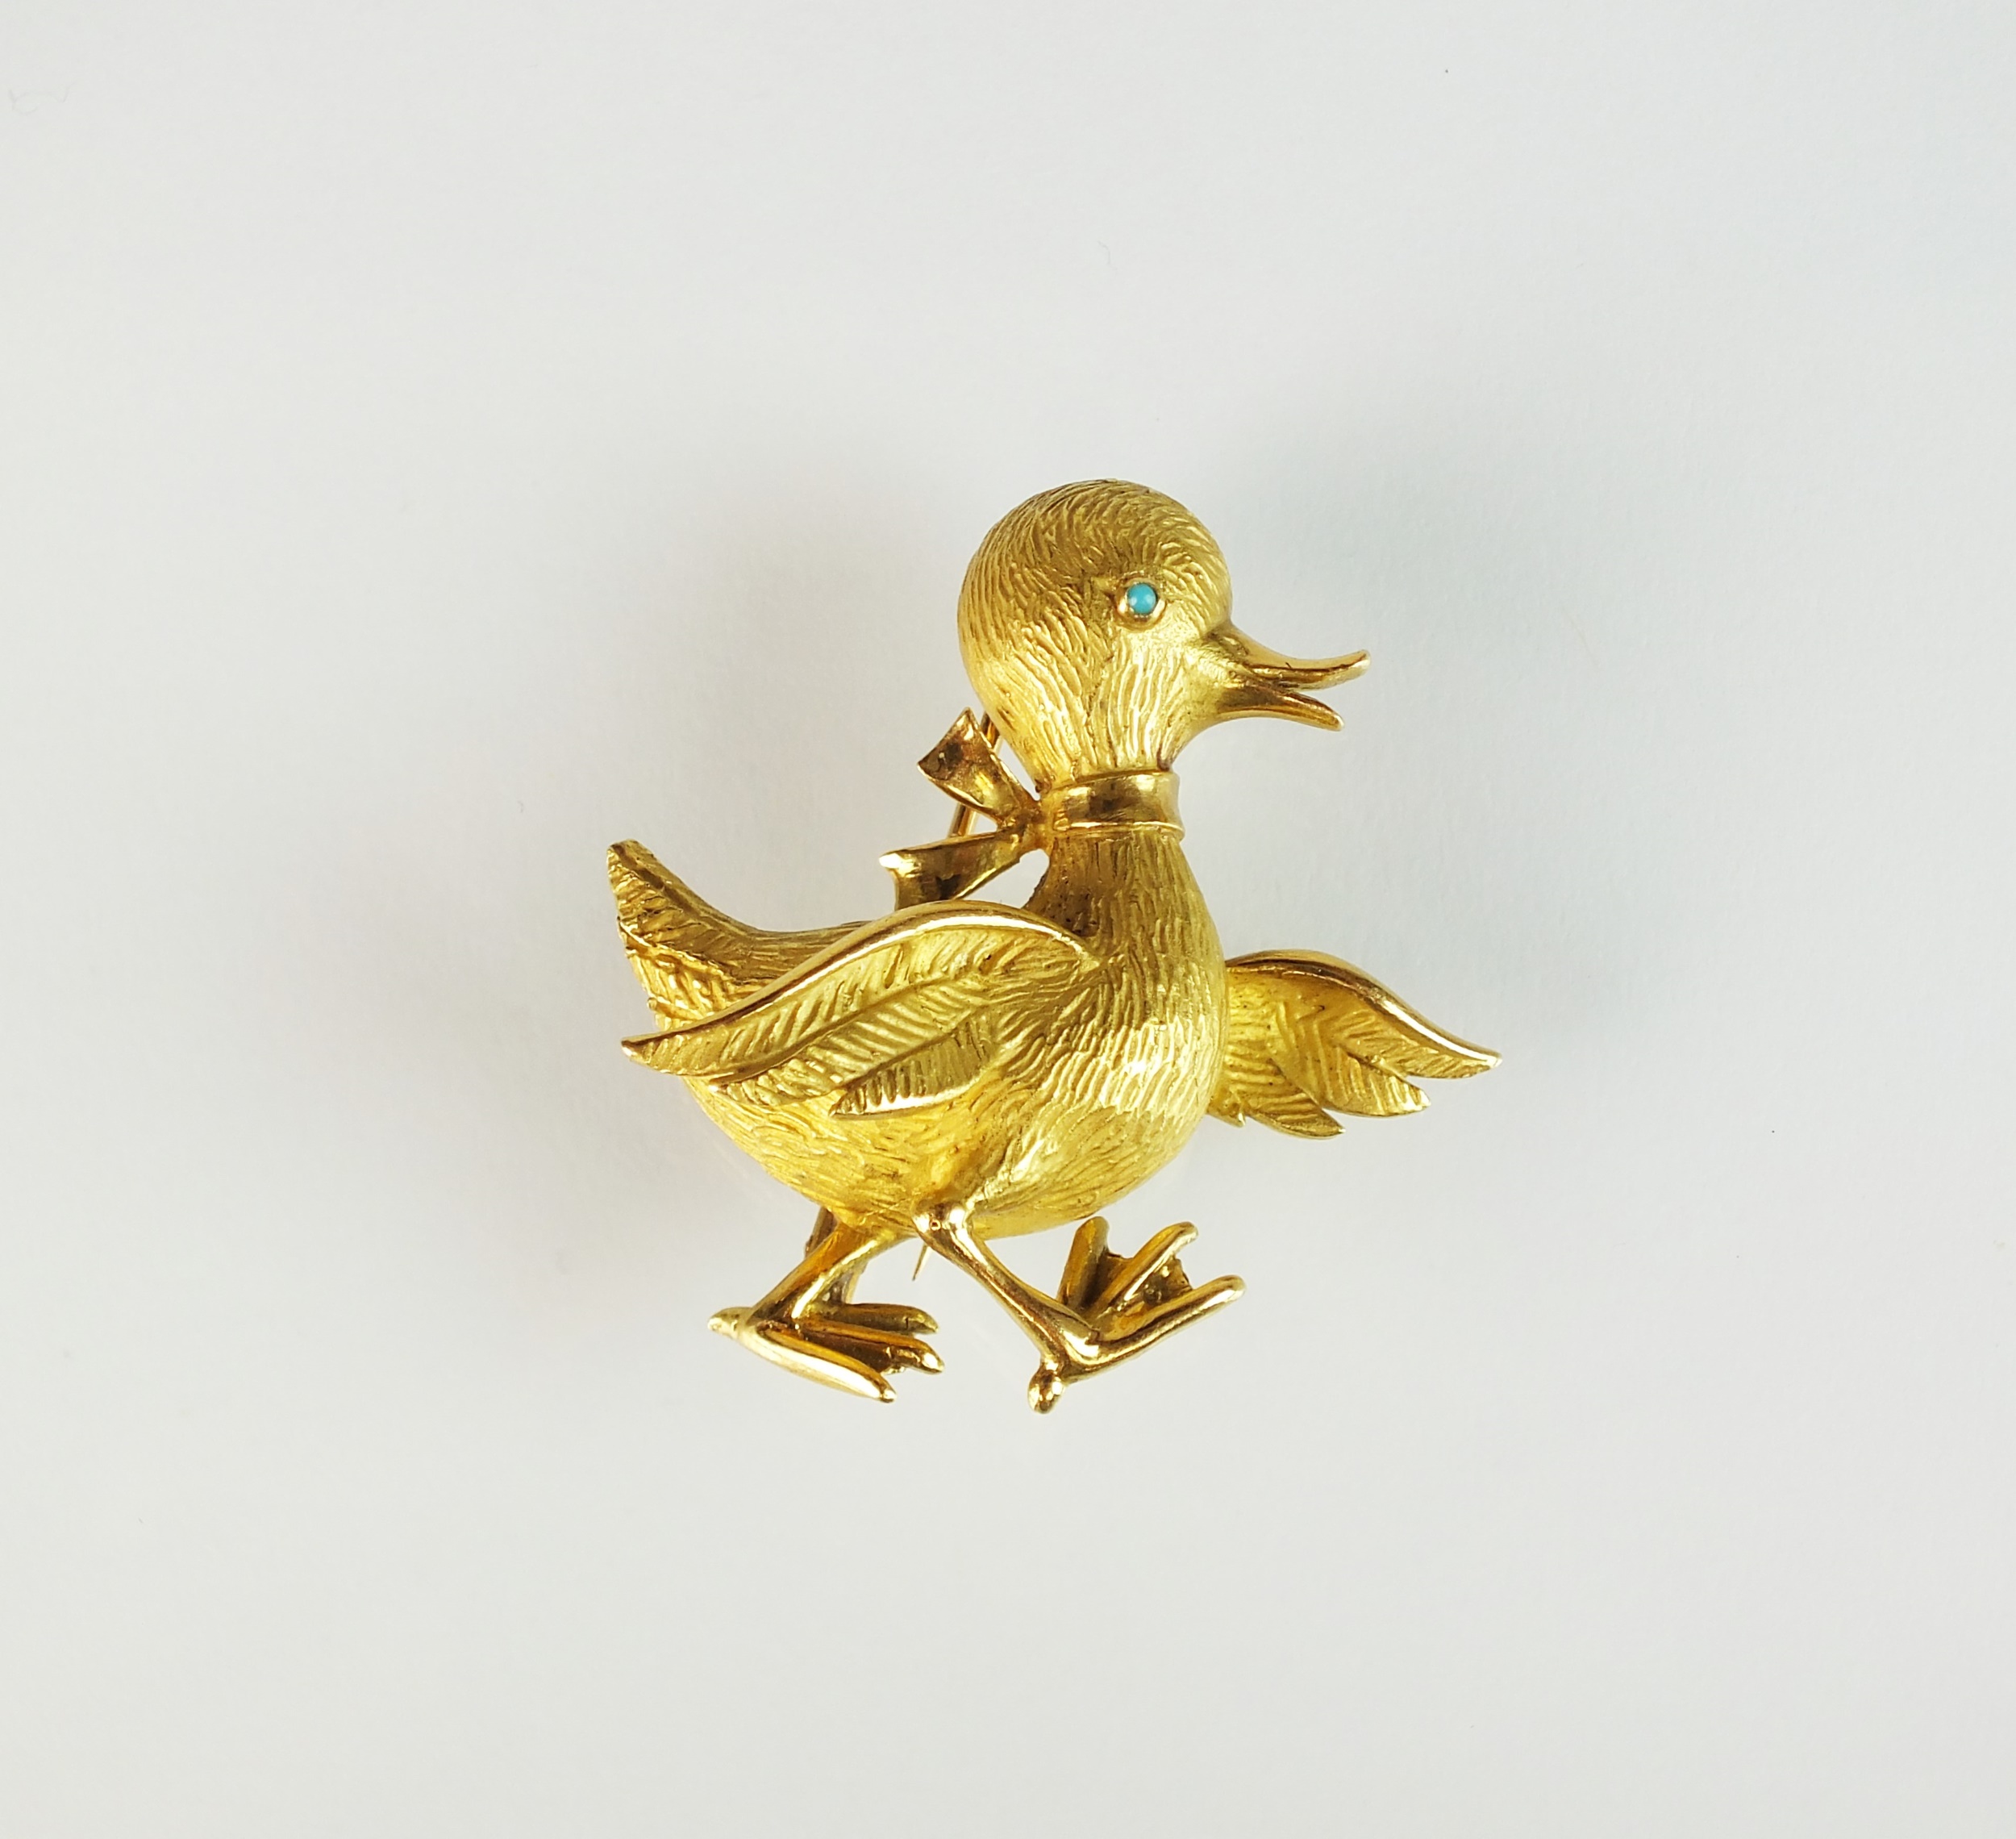 Lot 36 16/06/2021- An 18ct gold duck brooch by Boucheron, Halls Fine Art